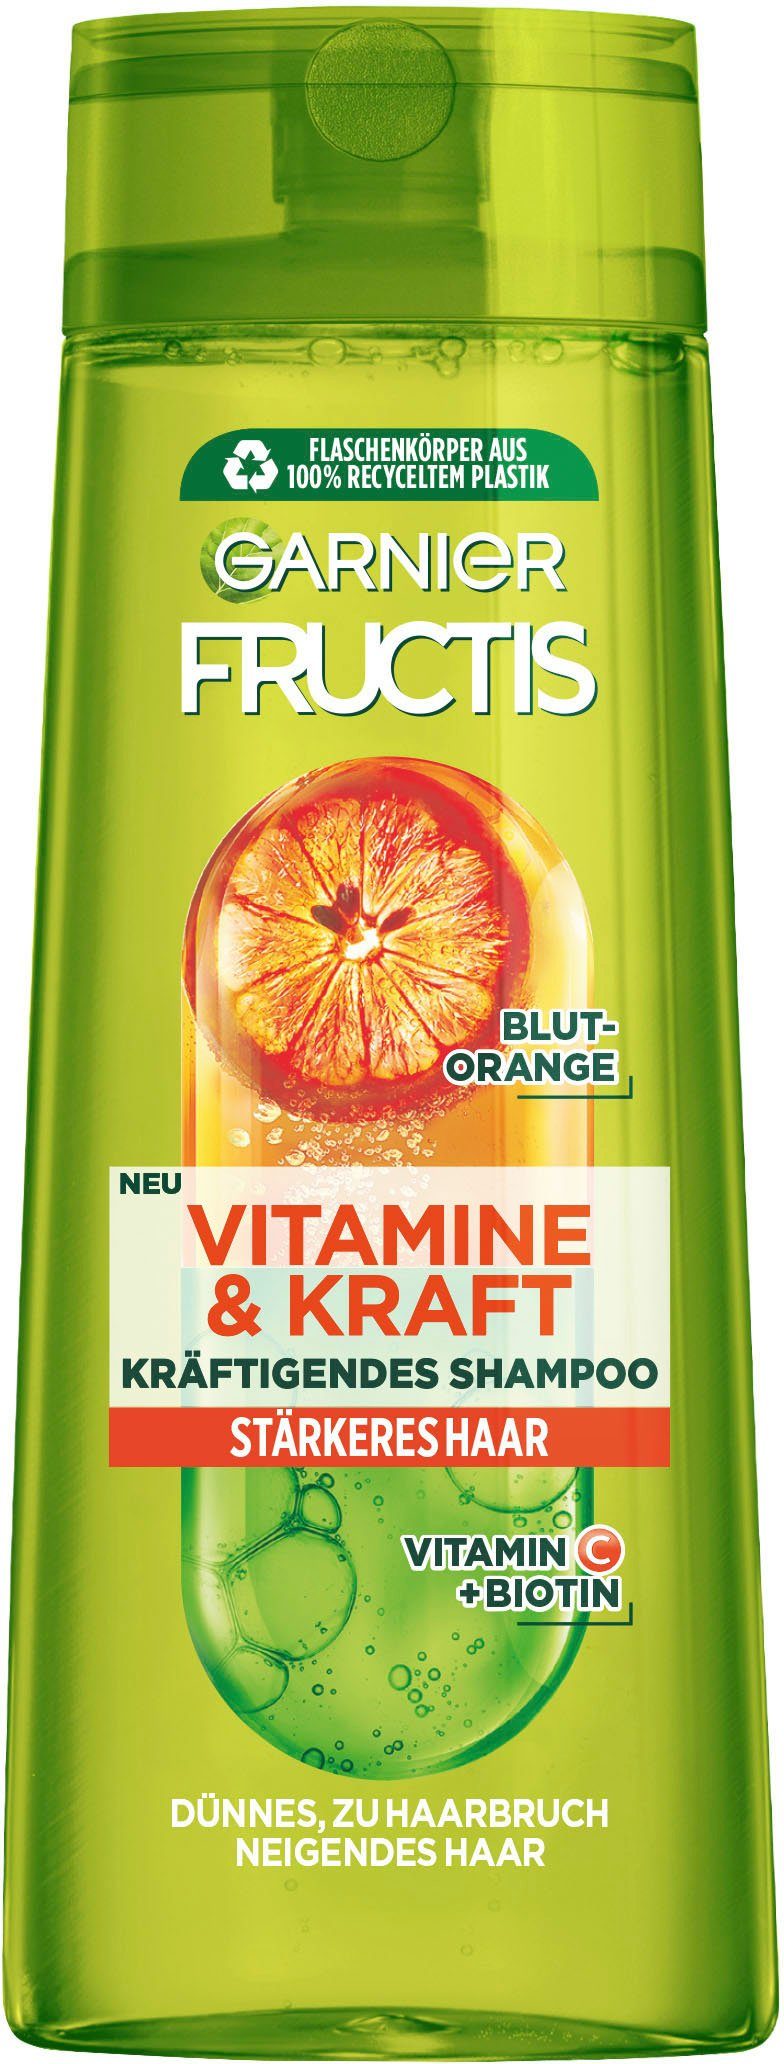 GARNIER Haarshampoo Garnier Fructis Vitamine & Kraft Shampoo, Set, 6-tlg. | Haarshampoos